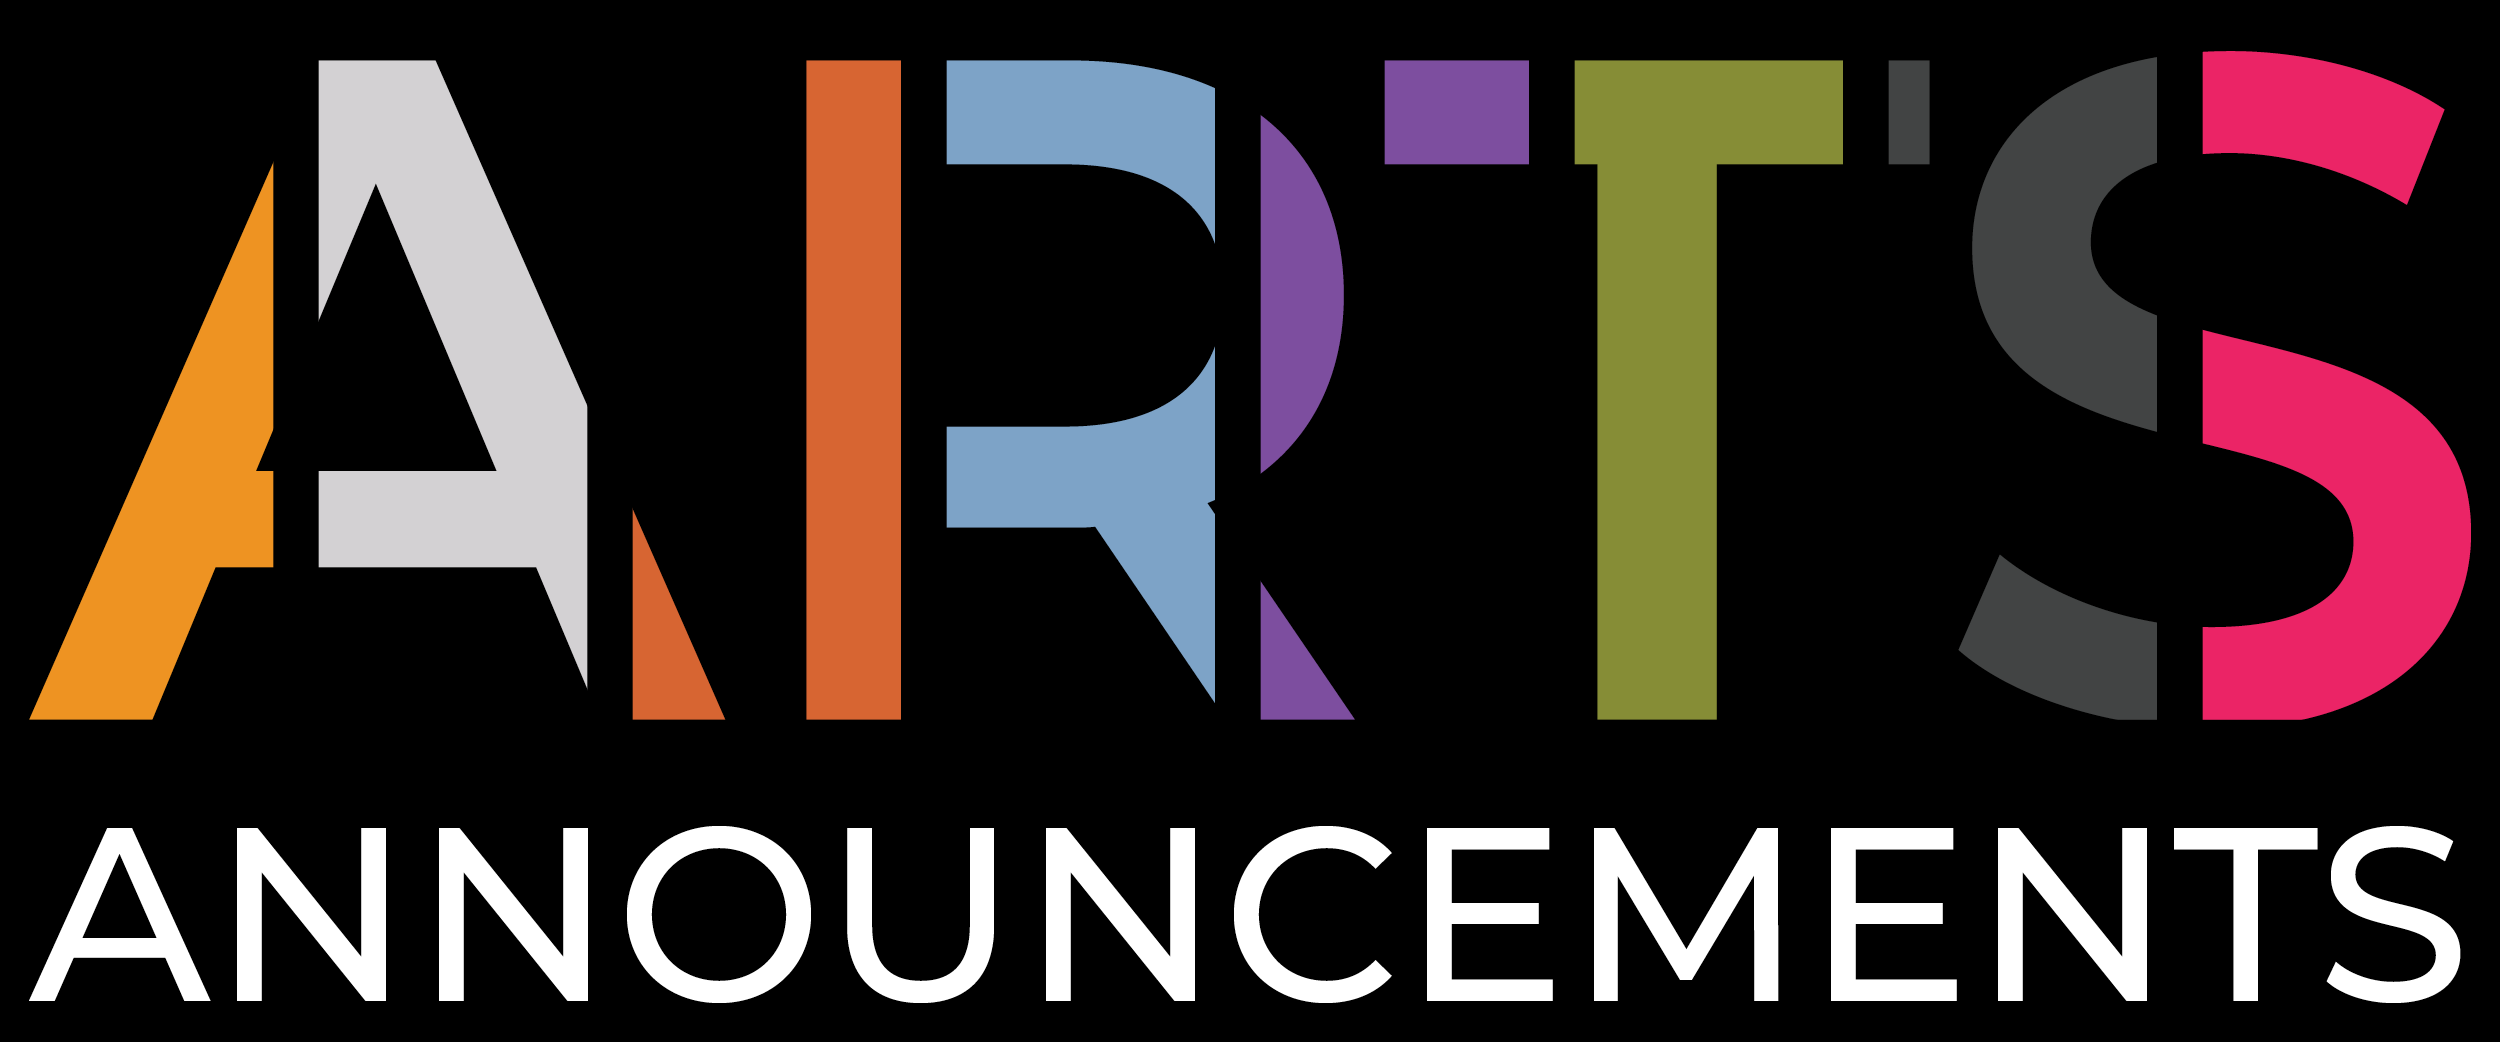 arts announcements logo